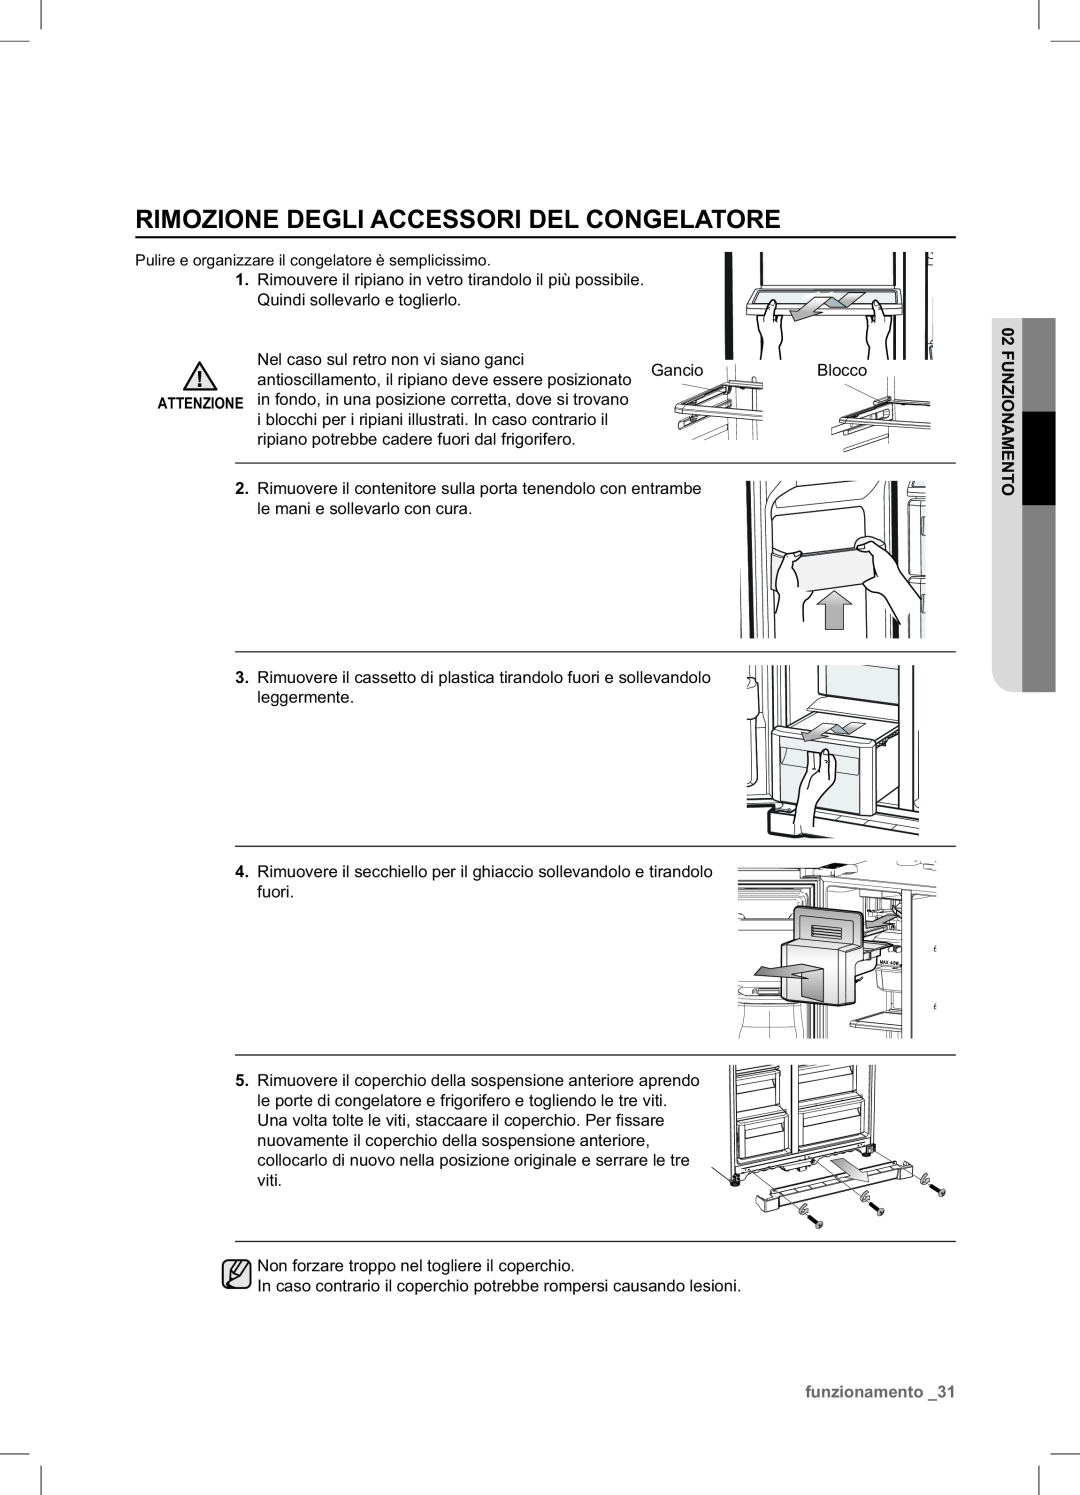 Samsung RSA1NTPE1/XES manual Rimozione Degli Accessori Del Congelatore, funzionamento 